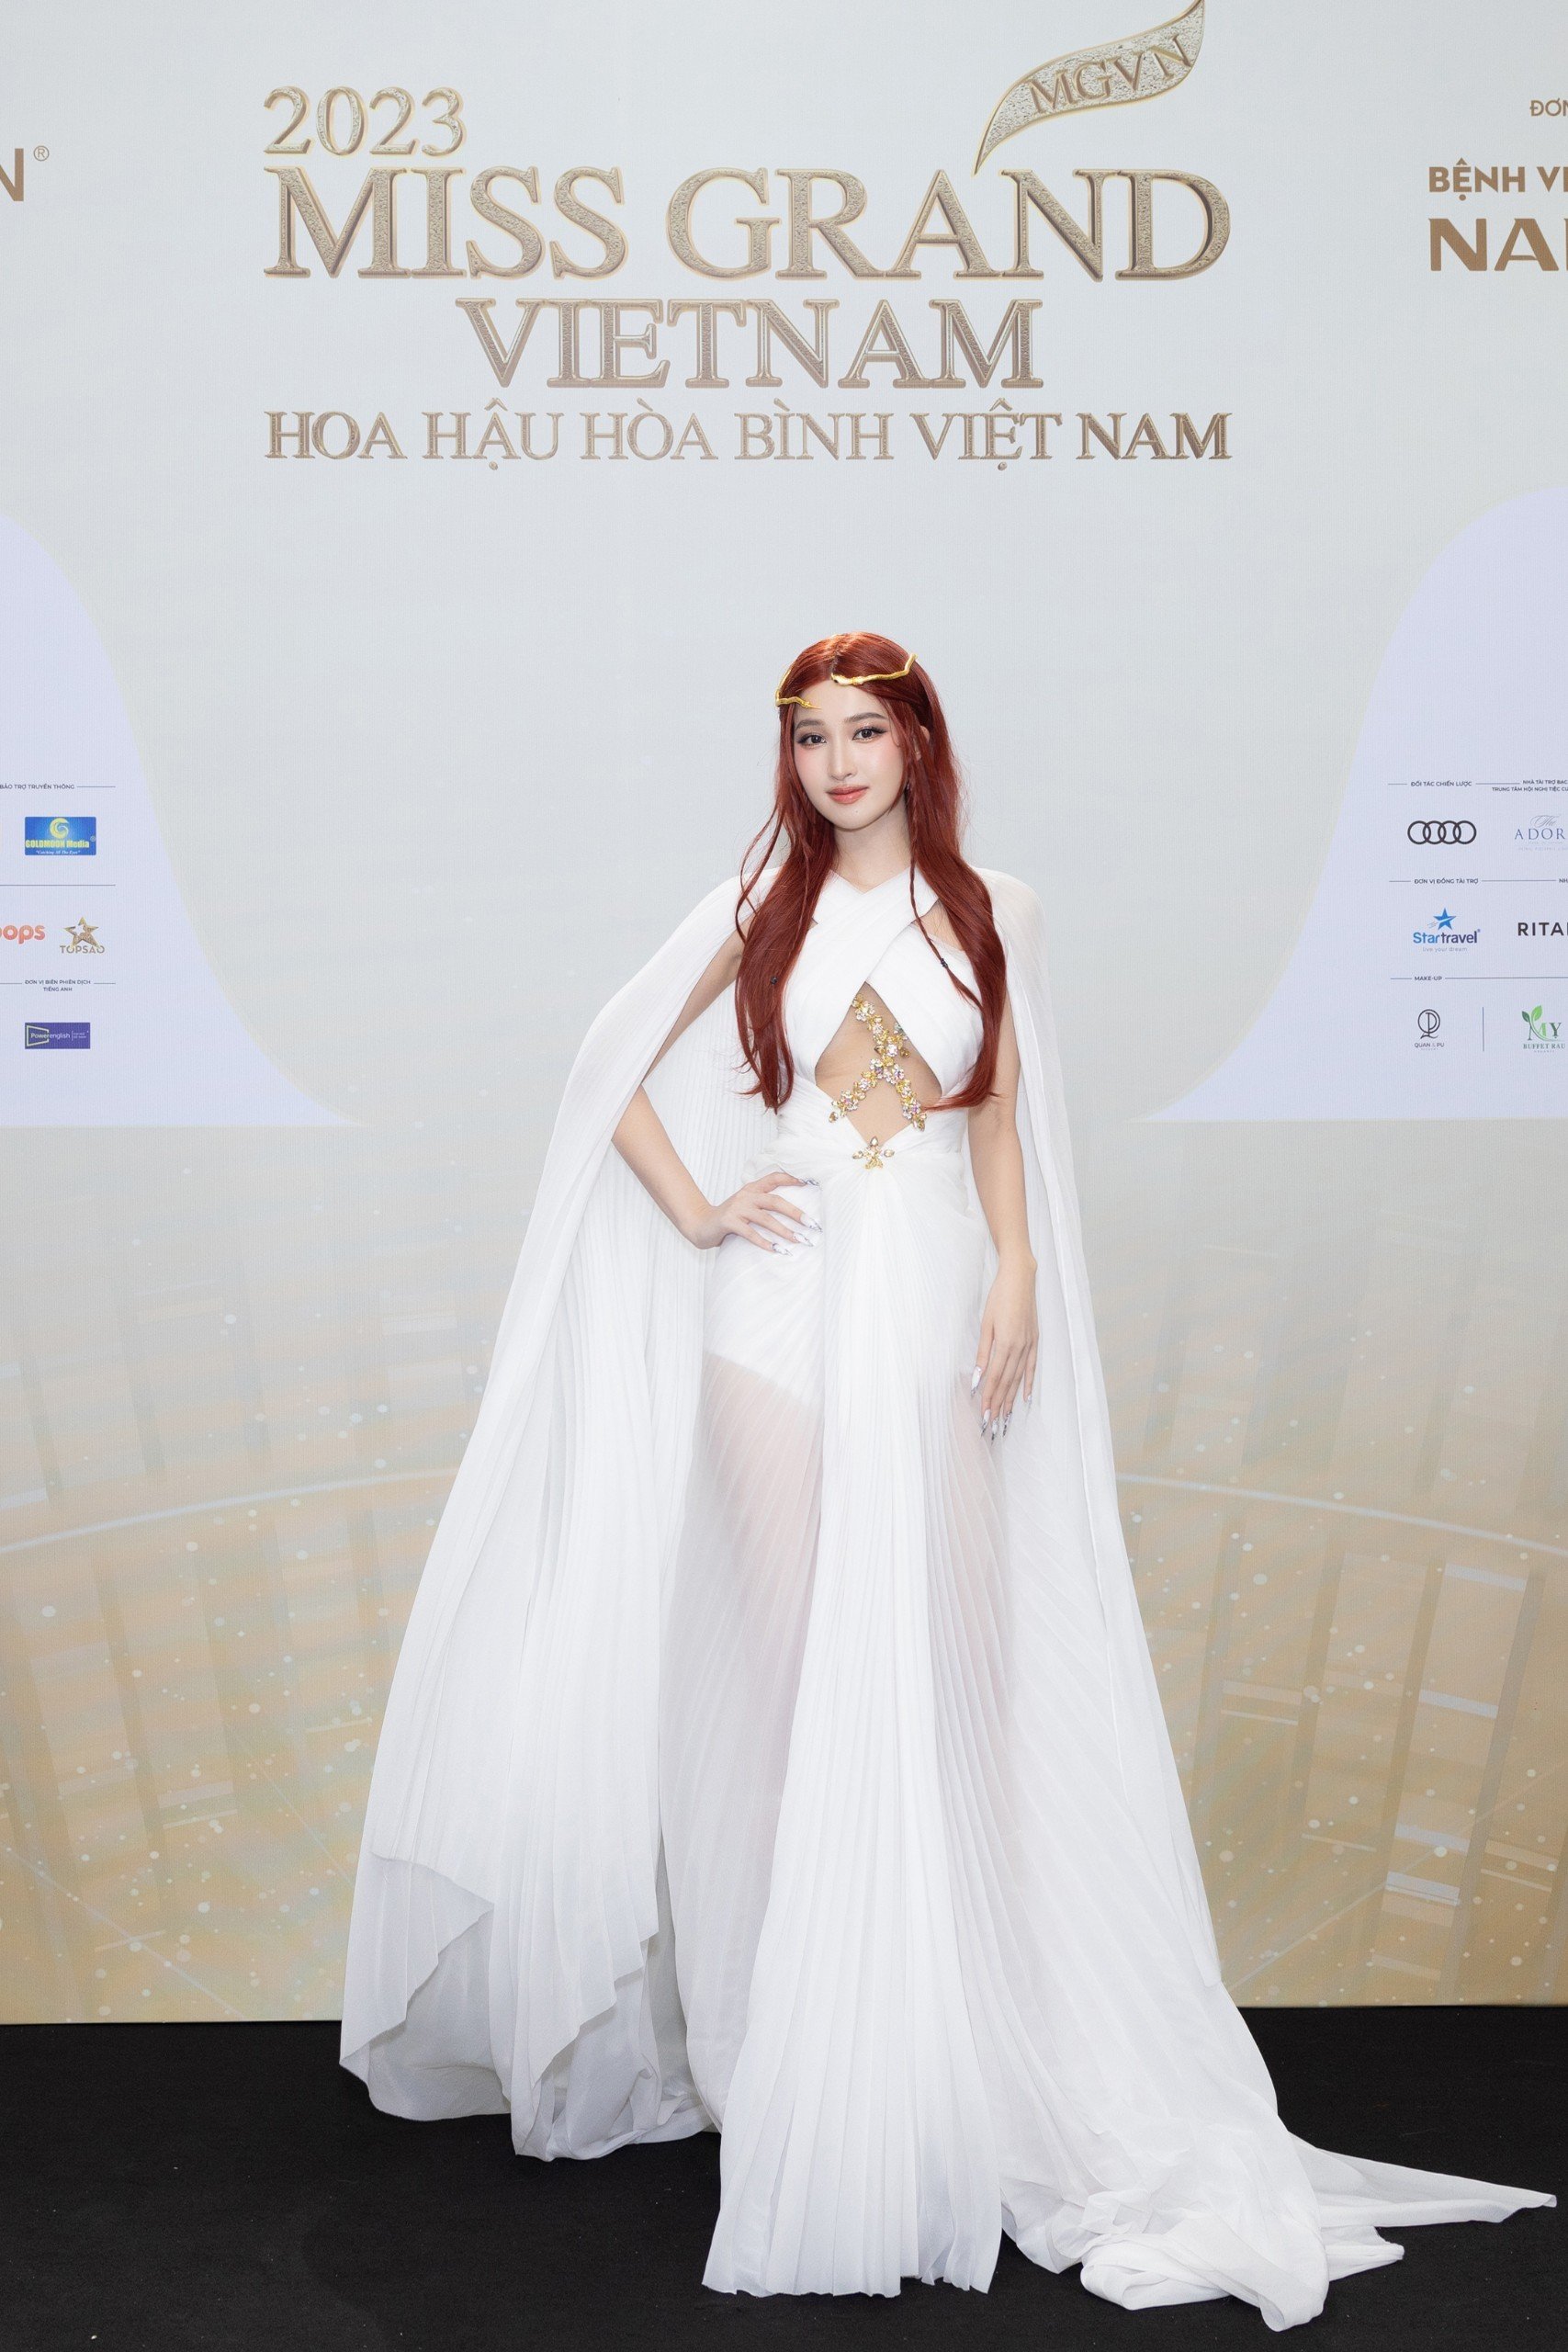 Thảm đỏ chung khảo toàn quốc Miss Grand Vietnam 2023: Huỳnh Minh Kiên khoe đường cong, Thuỳ Tiên kín đáo vẫn đẹp - ảnh 6